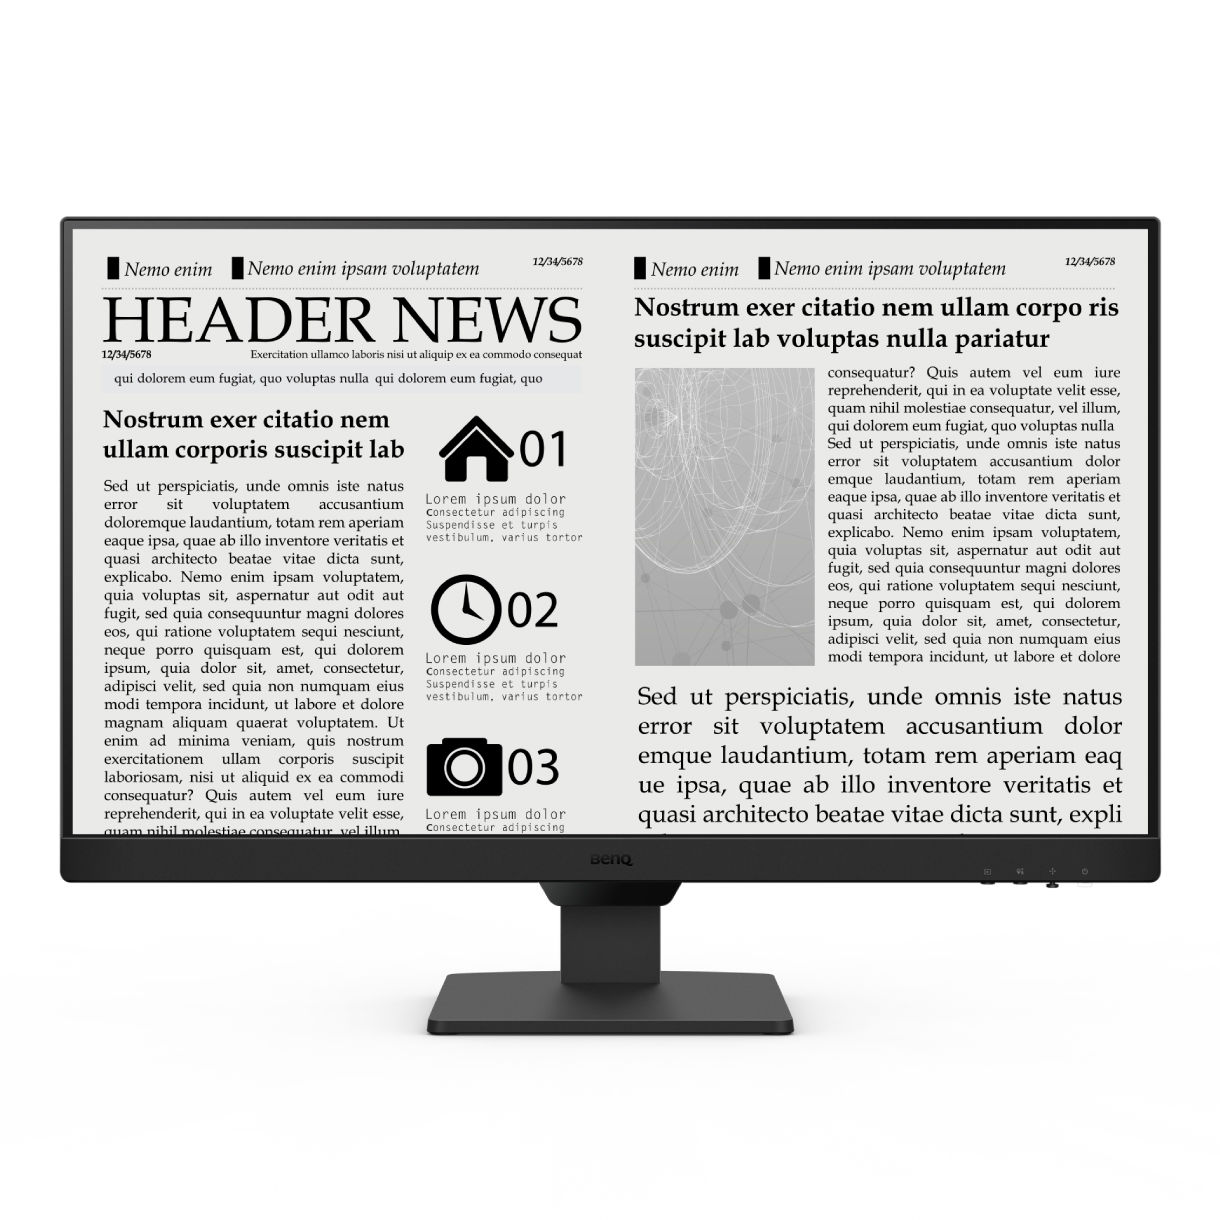 GW2790 wordt geleverd met e-paper-modus, een gesimuleerd e-bookdisplay dat tekst en achtergrond in balans brengt om de ogen tijdens lange leessessies niet te vermoeien